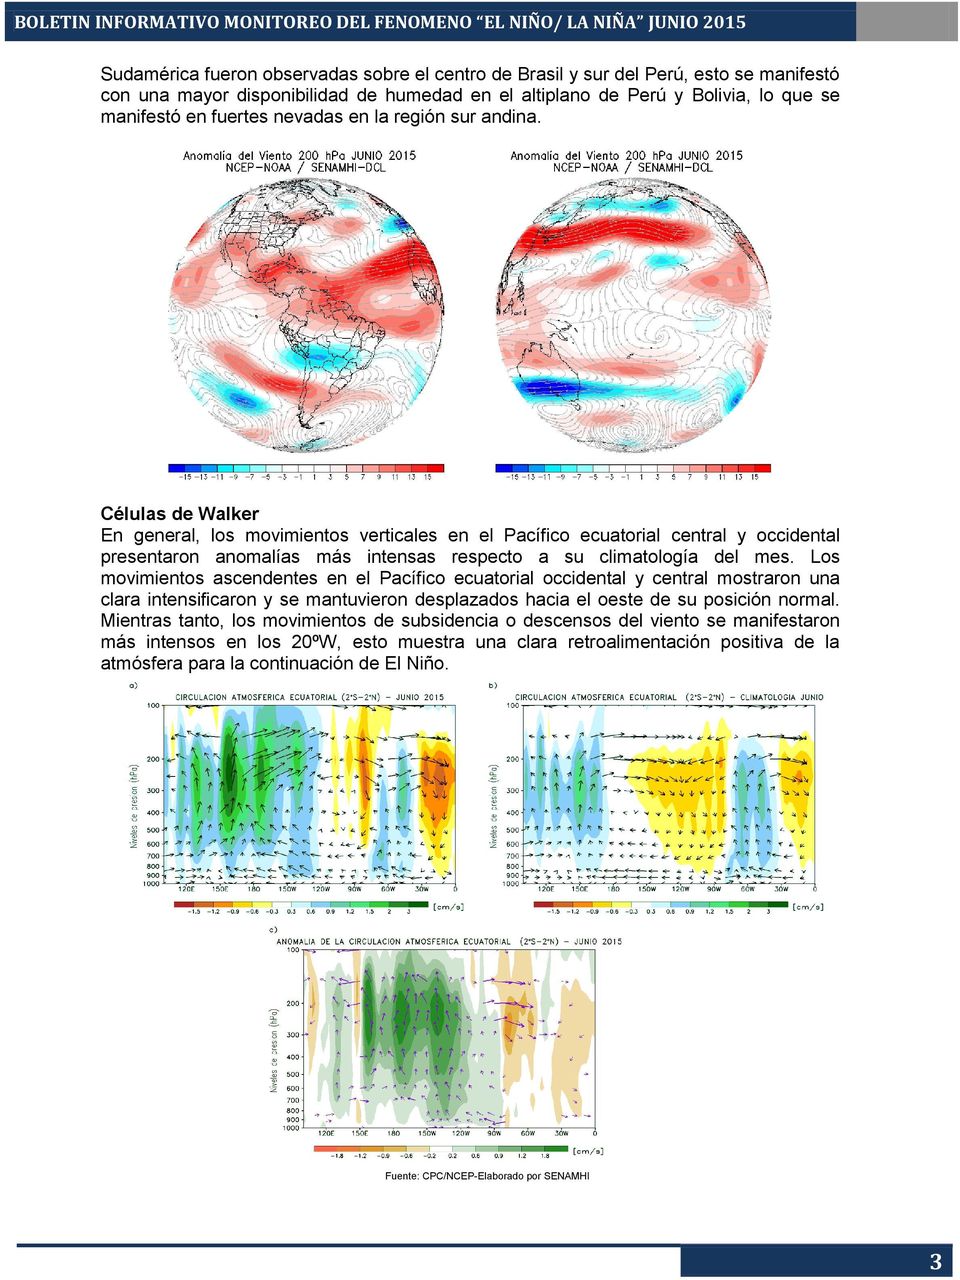 Células de Walker En general, los movimientos verticales en el Pacífico ecuatorial central y occidental presentaron anomalías más intensas respecto a su climatología del mes.